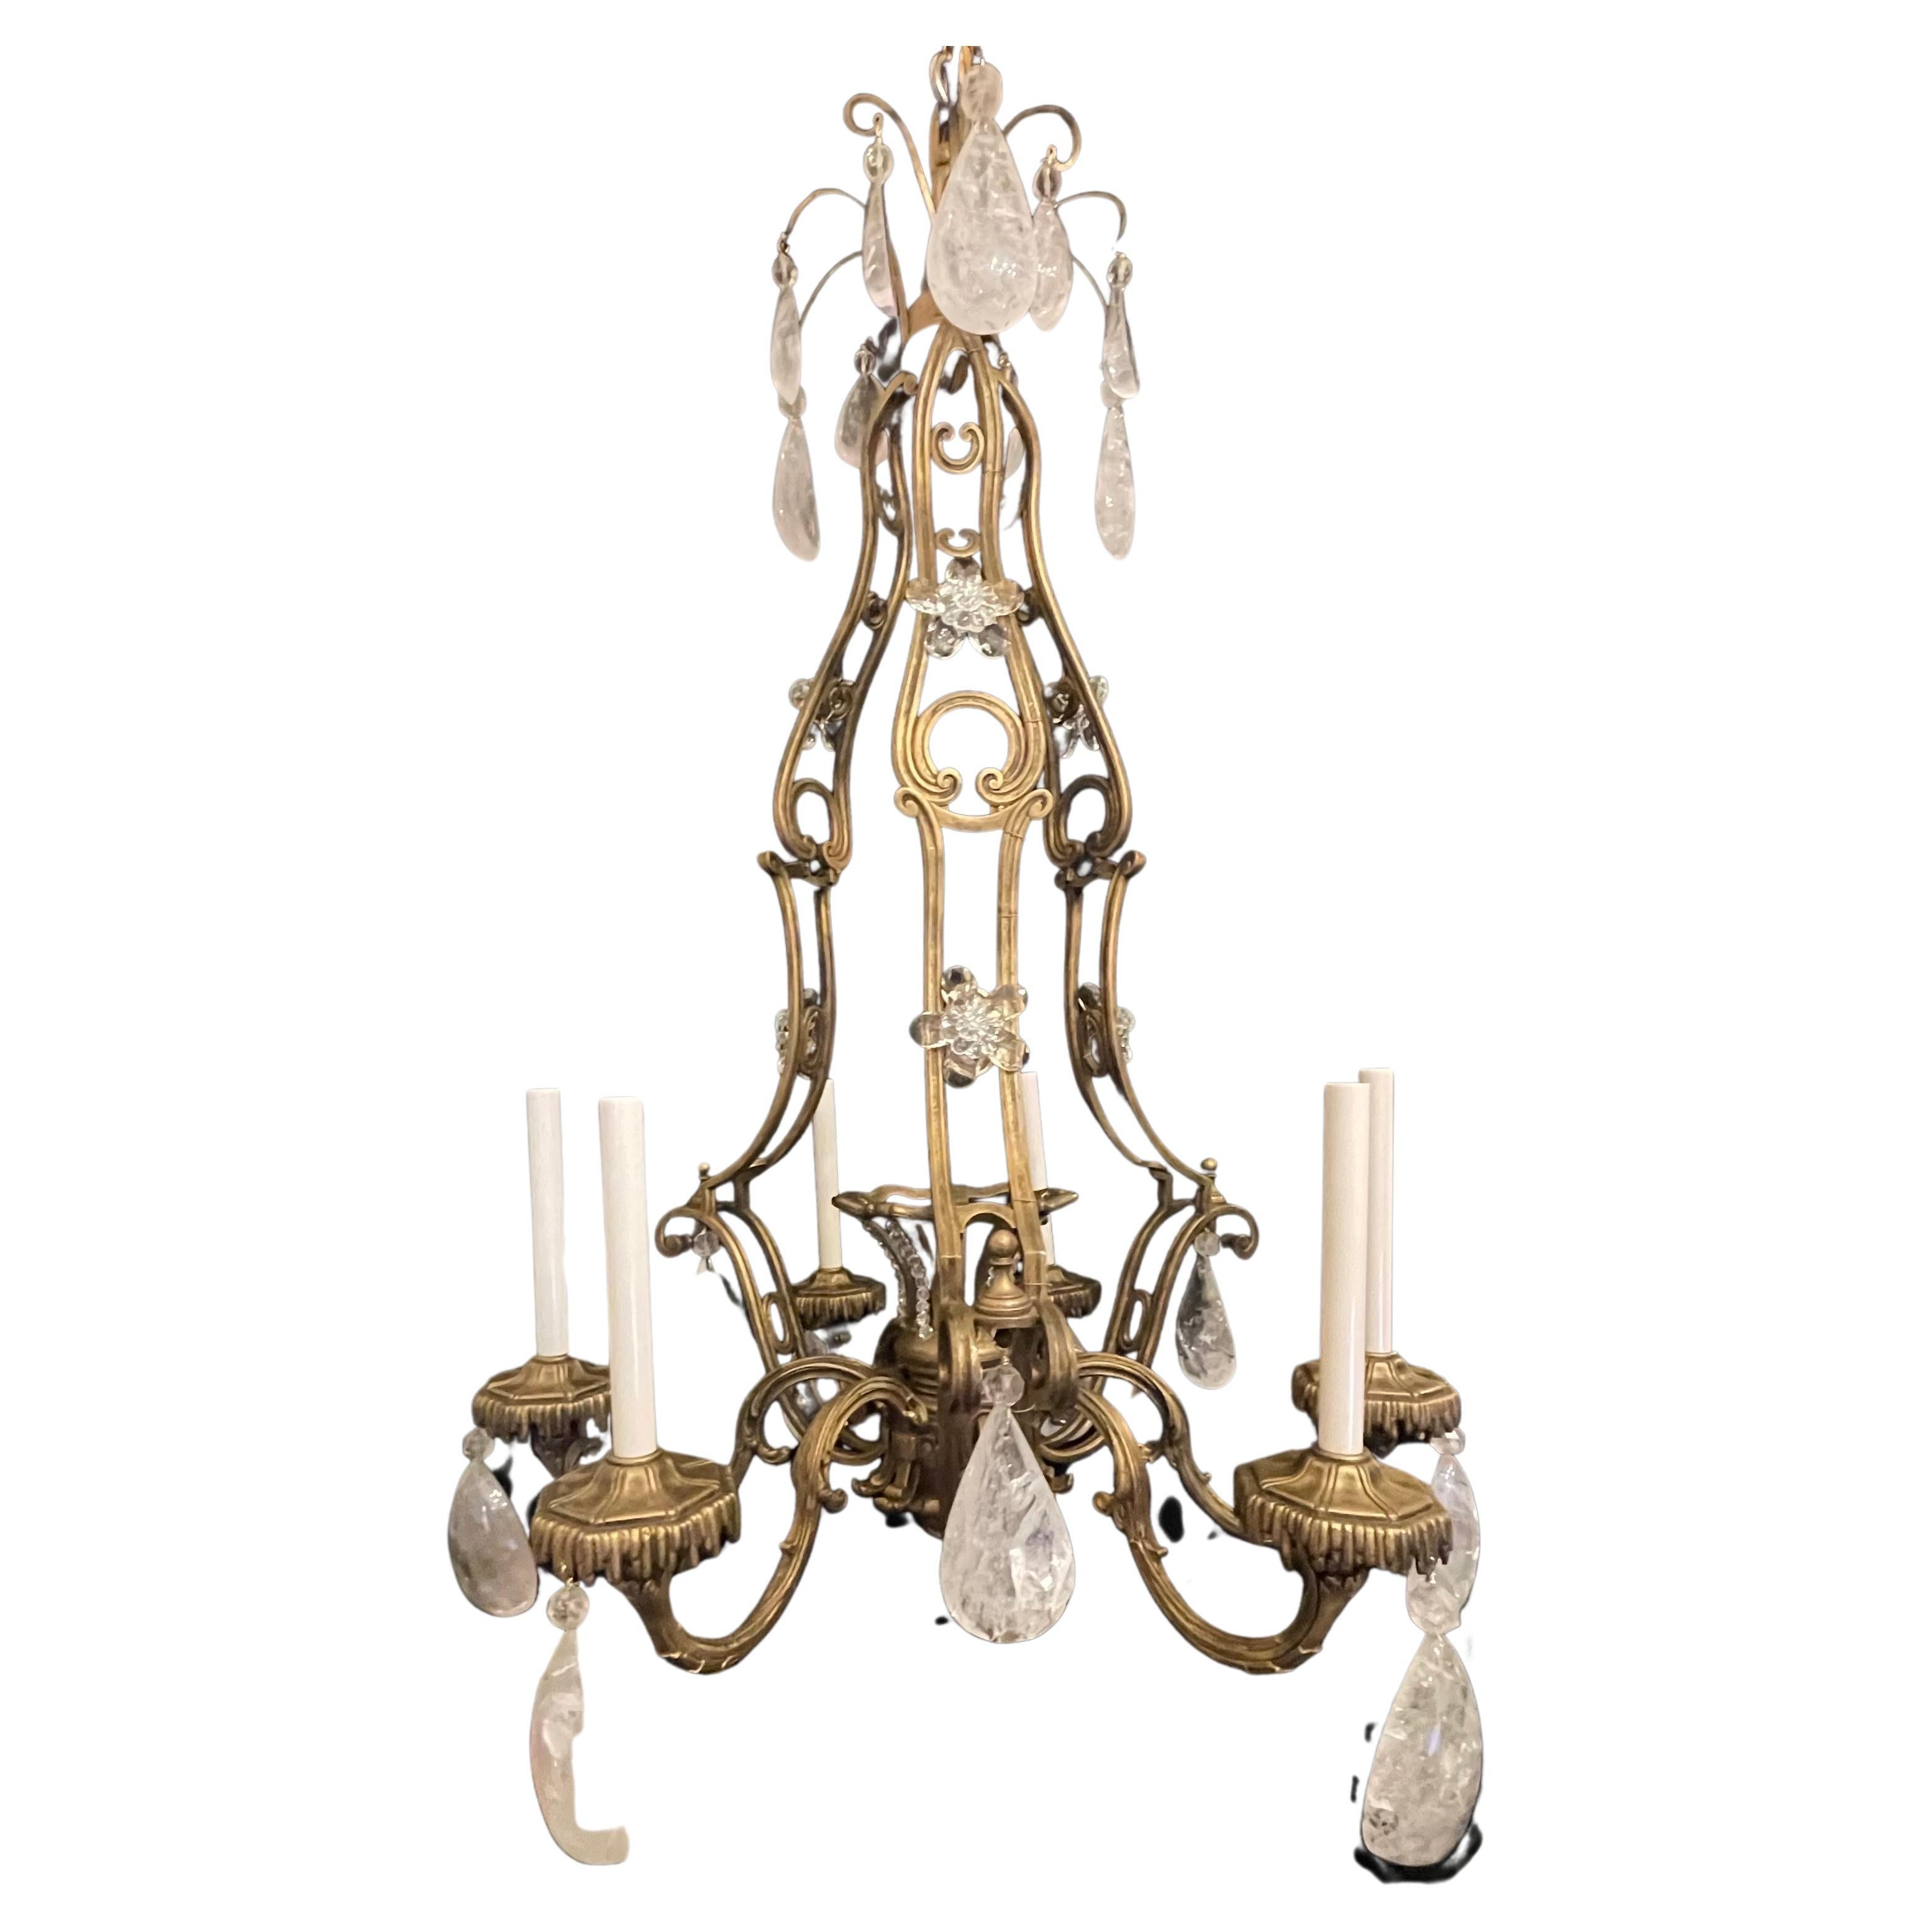 Merveilleux lustre en bronze de style Maison Baguès, en forme de cage d'oiseau, avec 6 chandeliers.